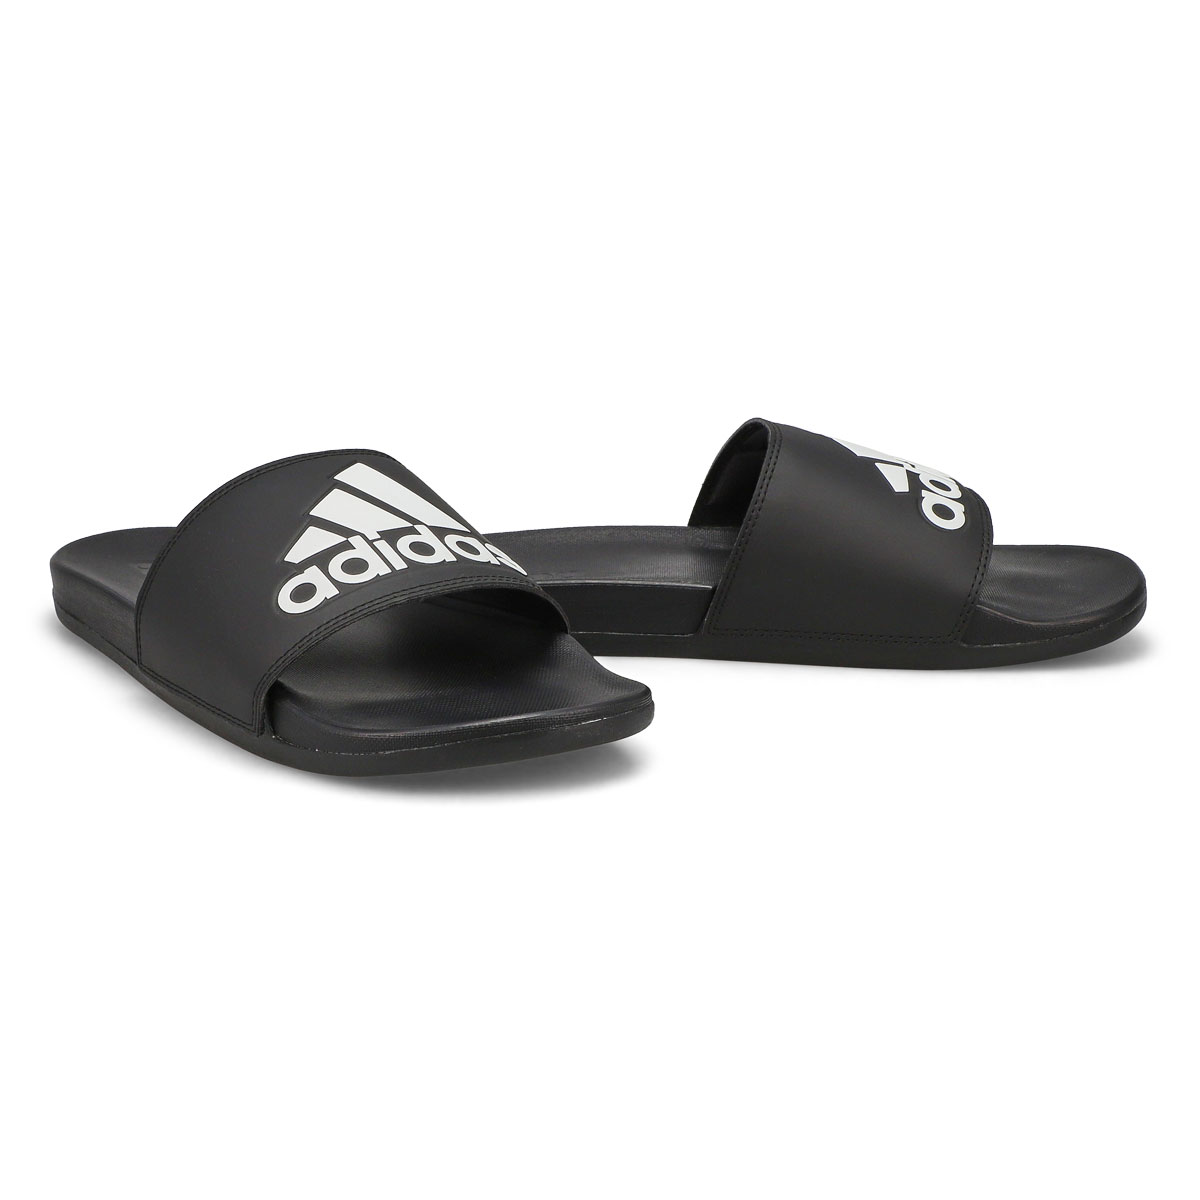 Men's Adilette Comfort Slide Sandal - Black/White